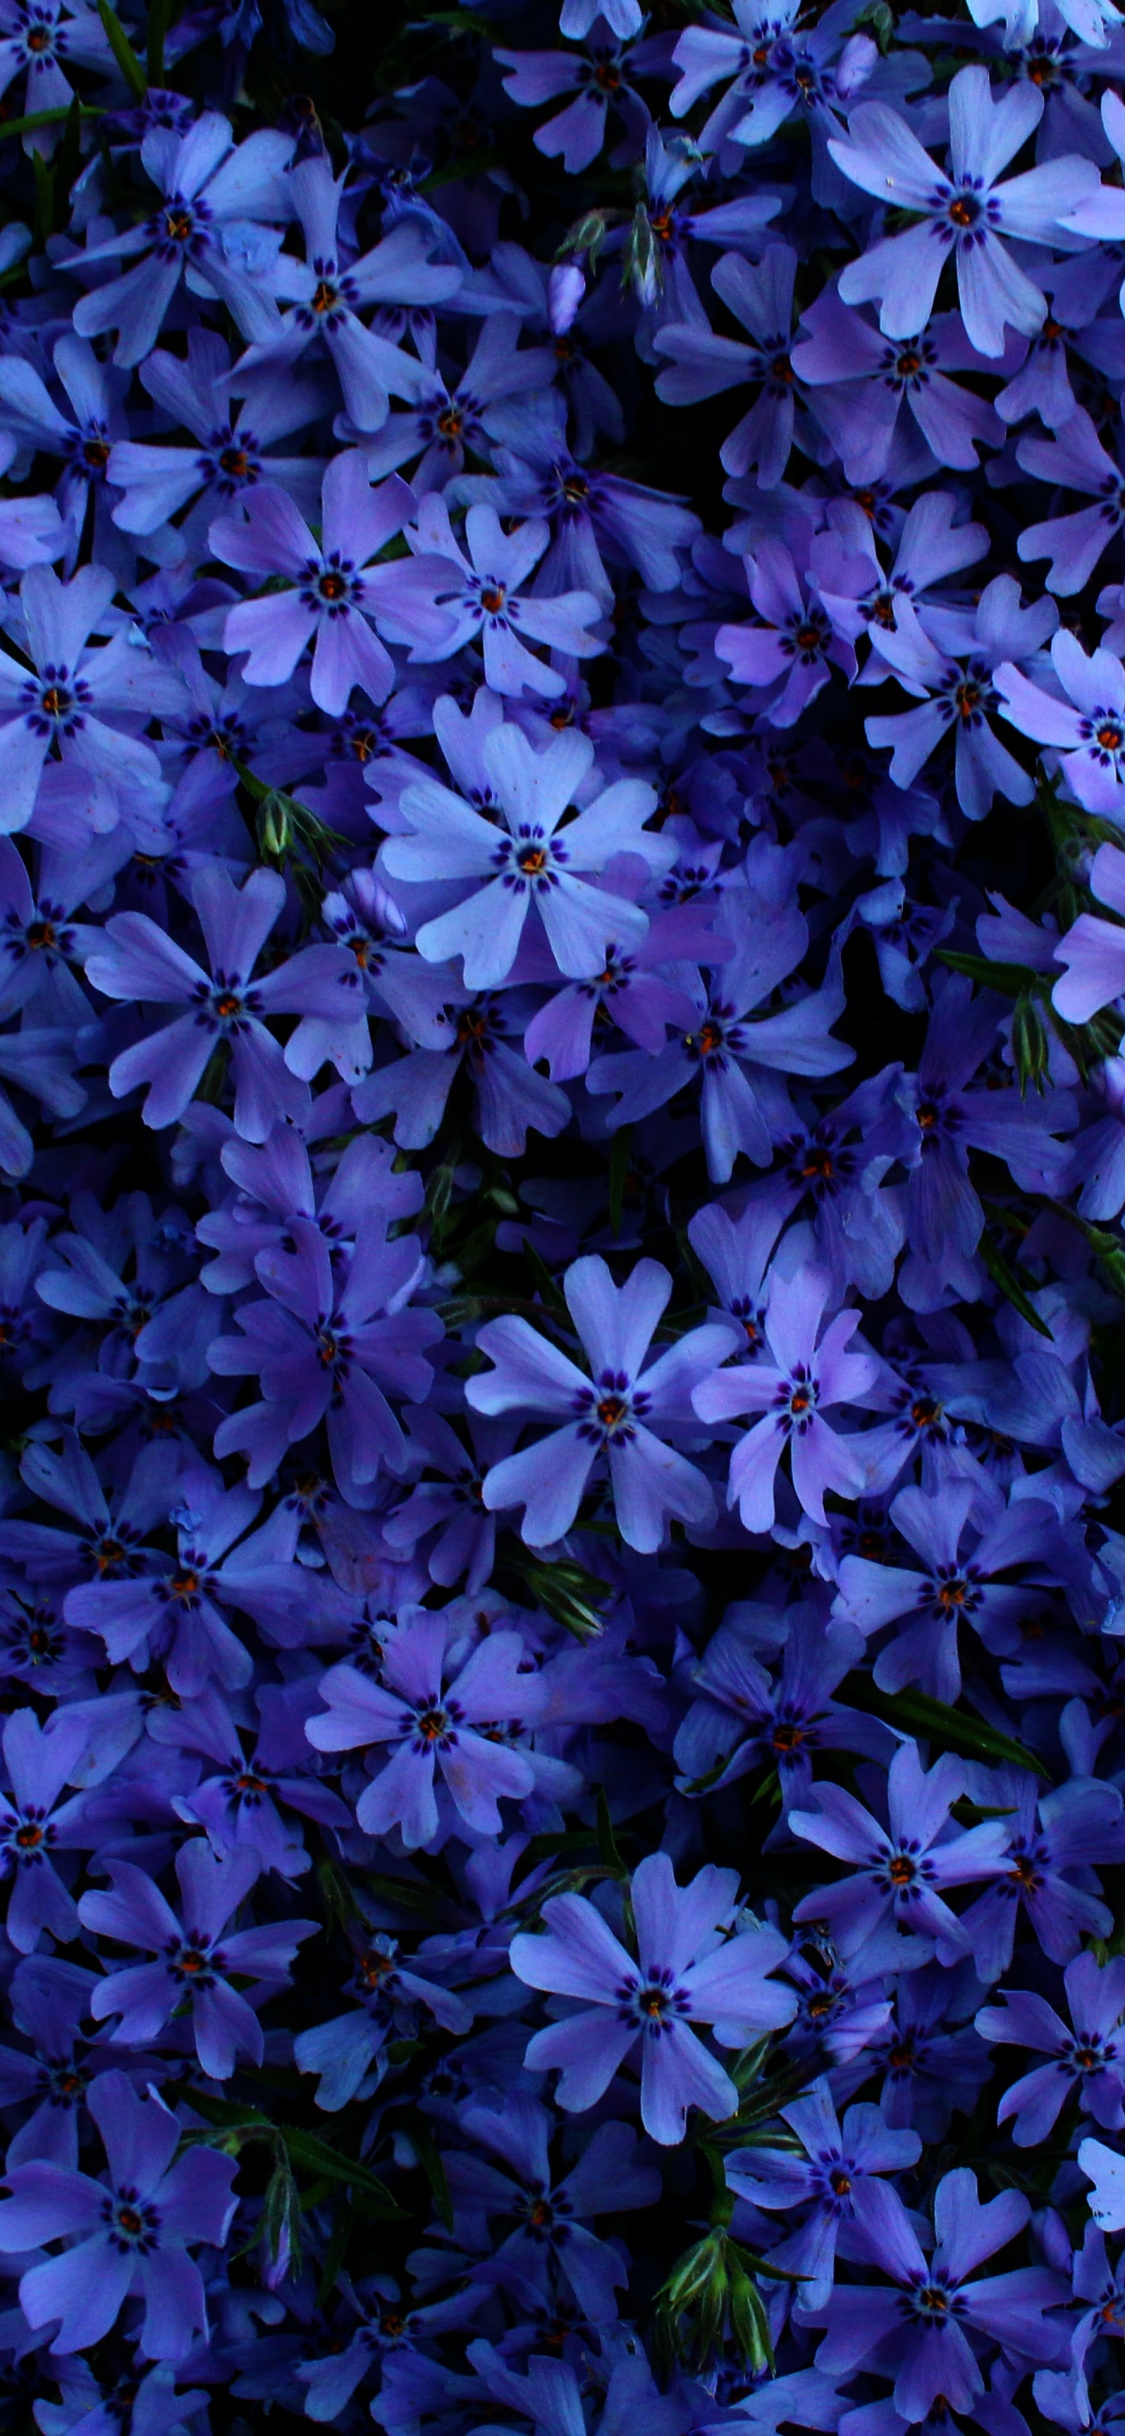 Hình nền Blue flowers Wallpaper sẽ khiến bạn cảm thấy thư thái và yên bình. Những bông hoa xanh tươi và xinh đẹp sẽ làm cho bạn thấy thoải mái và thư giãn khi sử dụng điện thoại của mình.